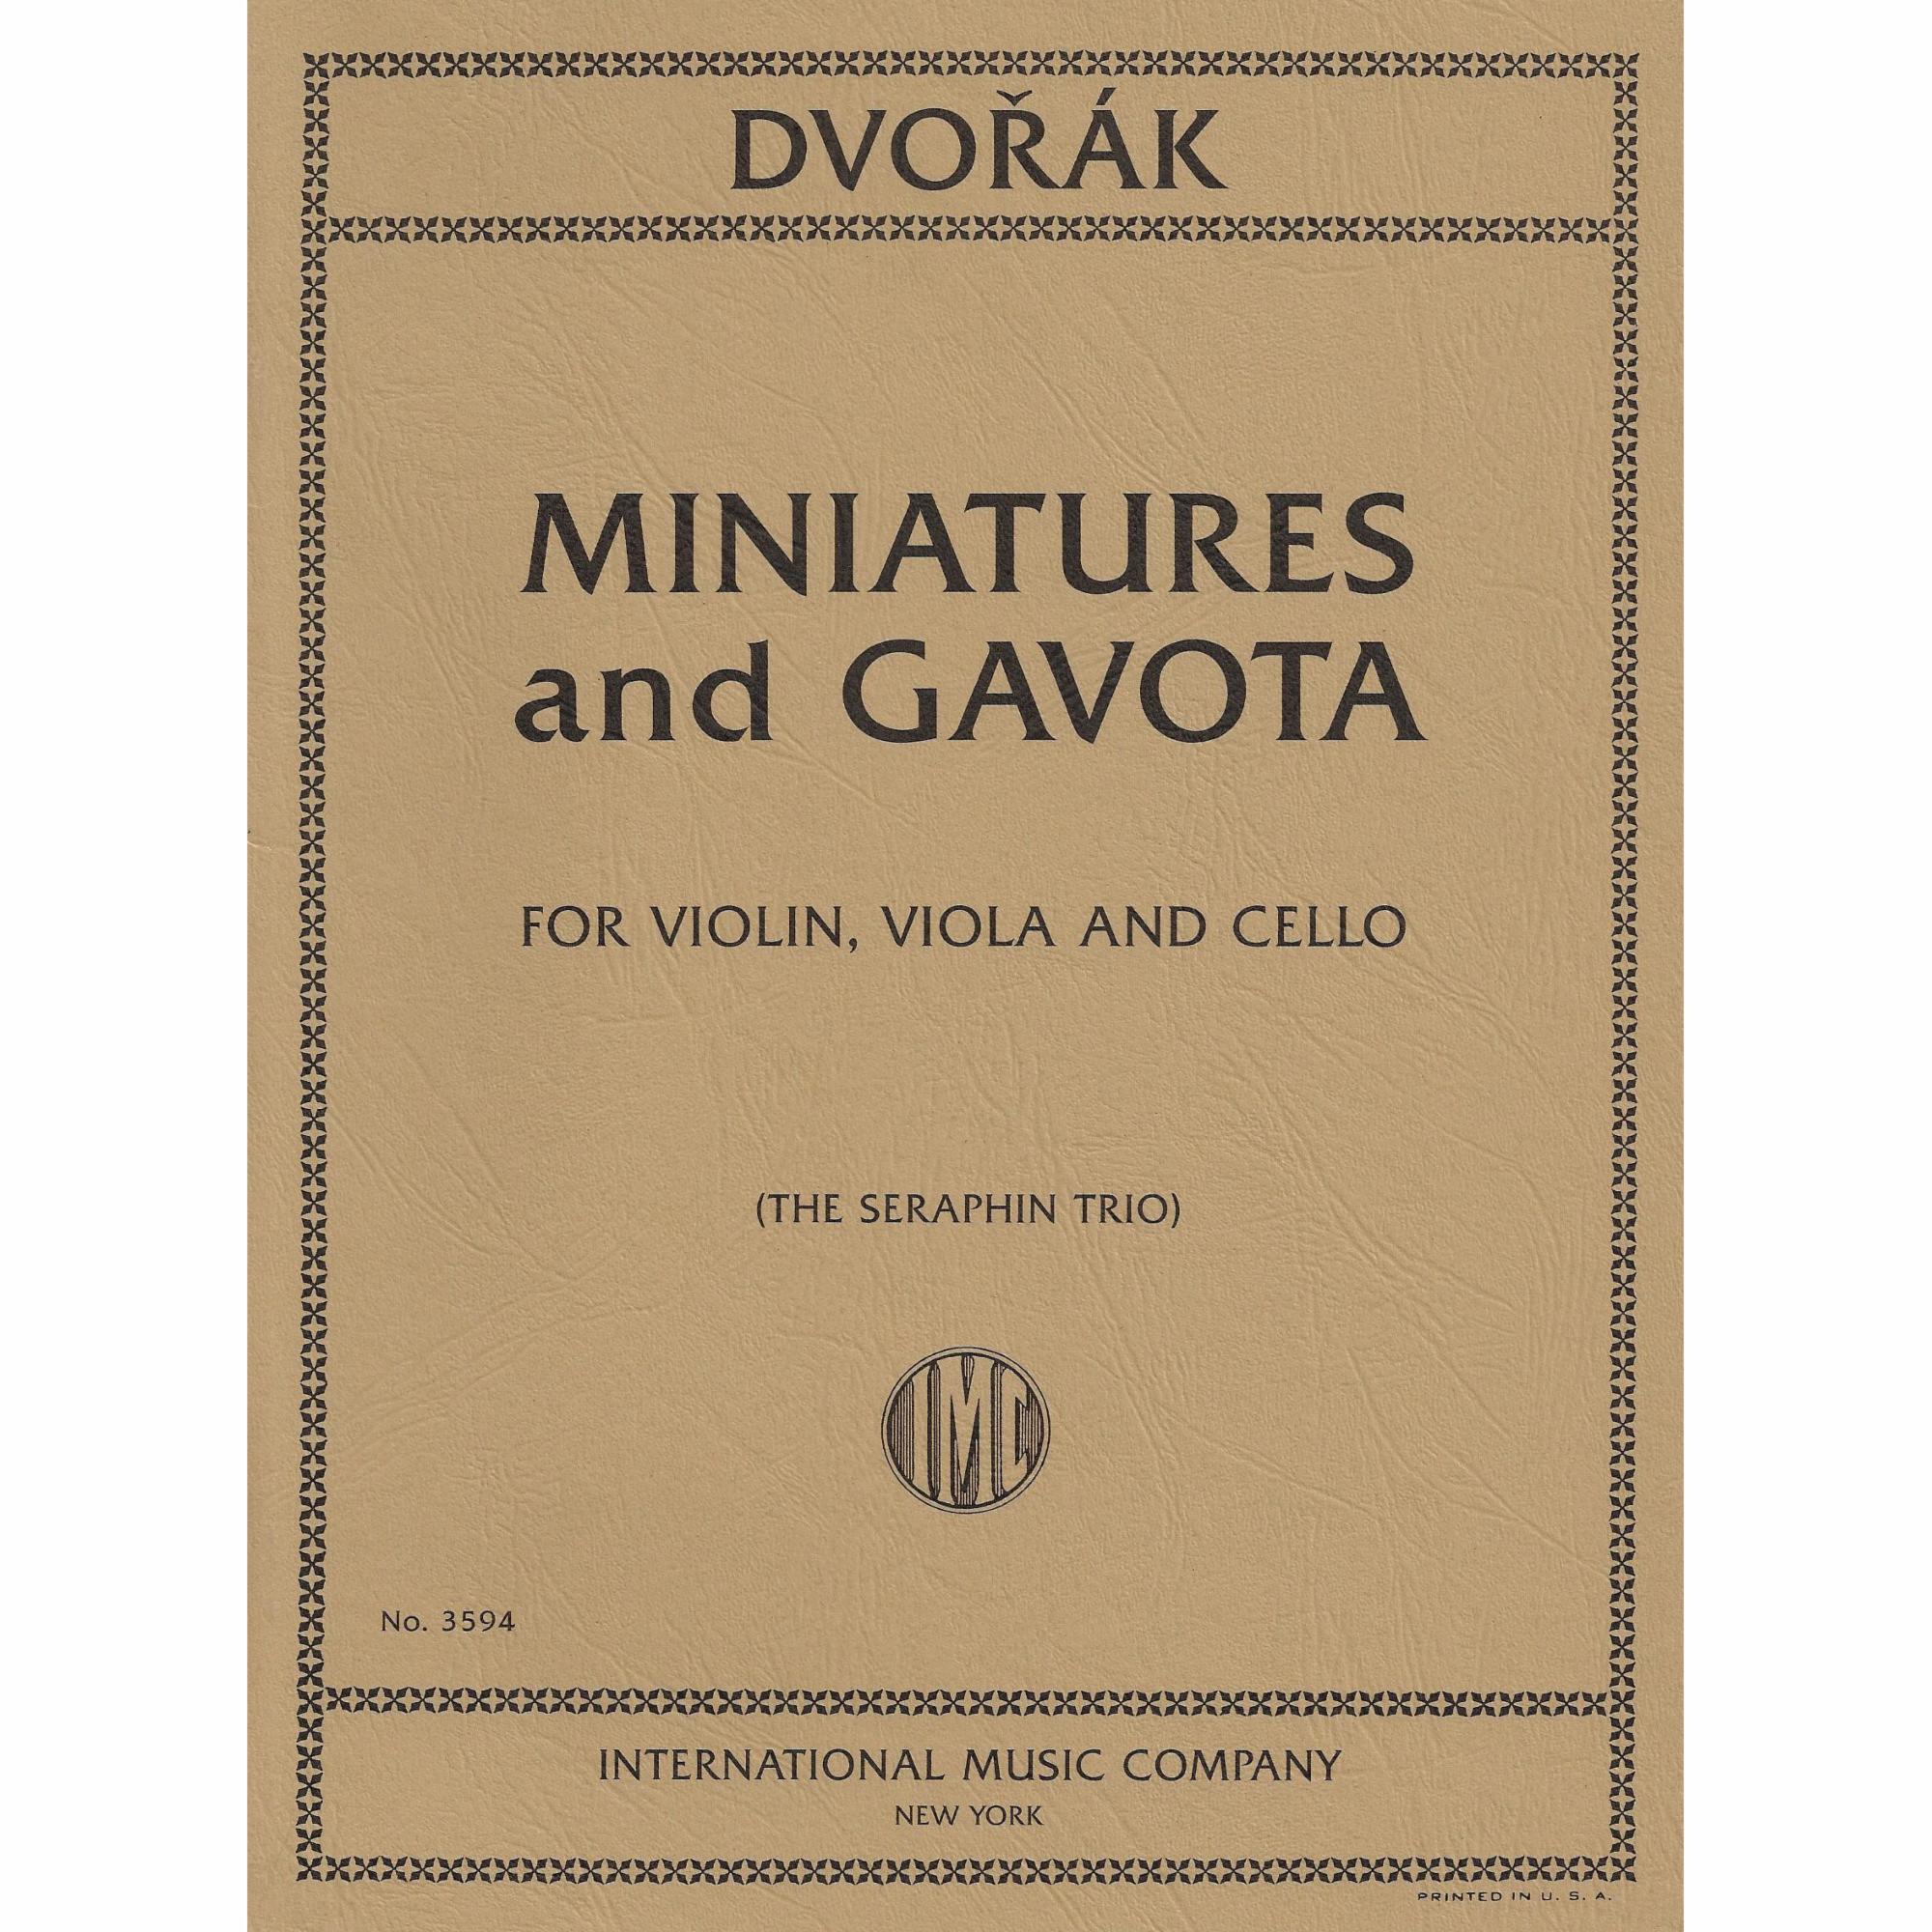 Dvorak -- Miniatures and Gavota for Violin, Viola, and Cello